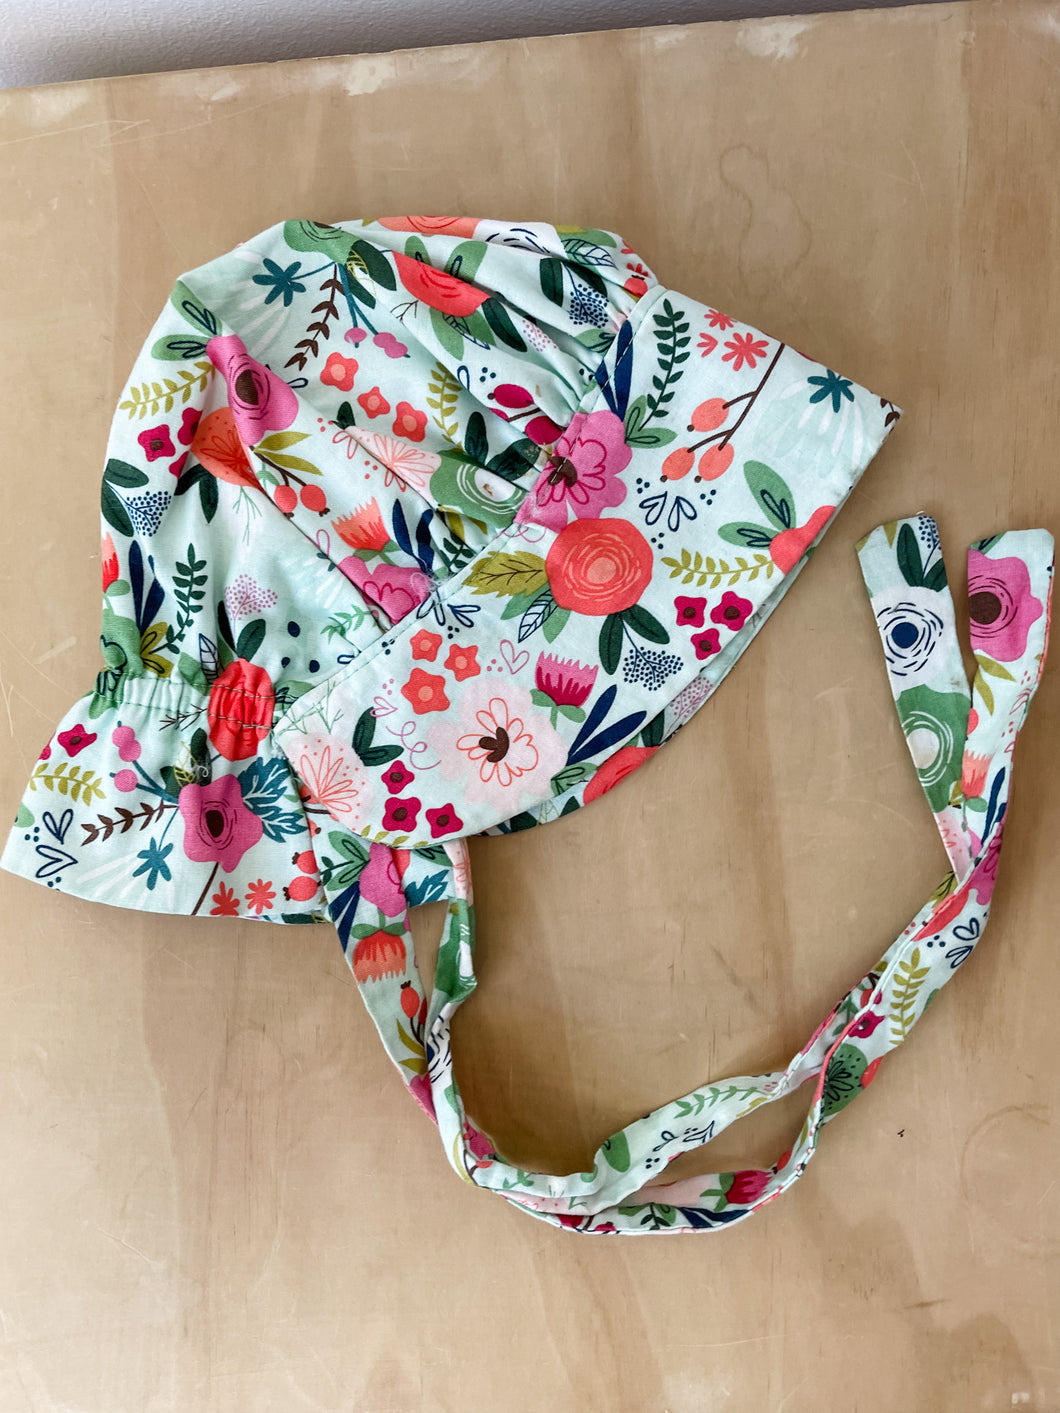 Floral Bonnet Size 12-18 Months